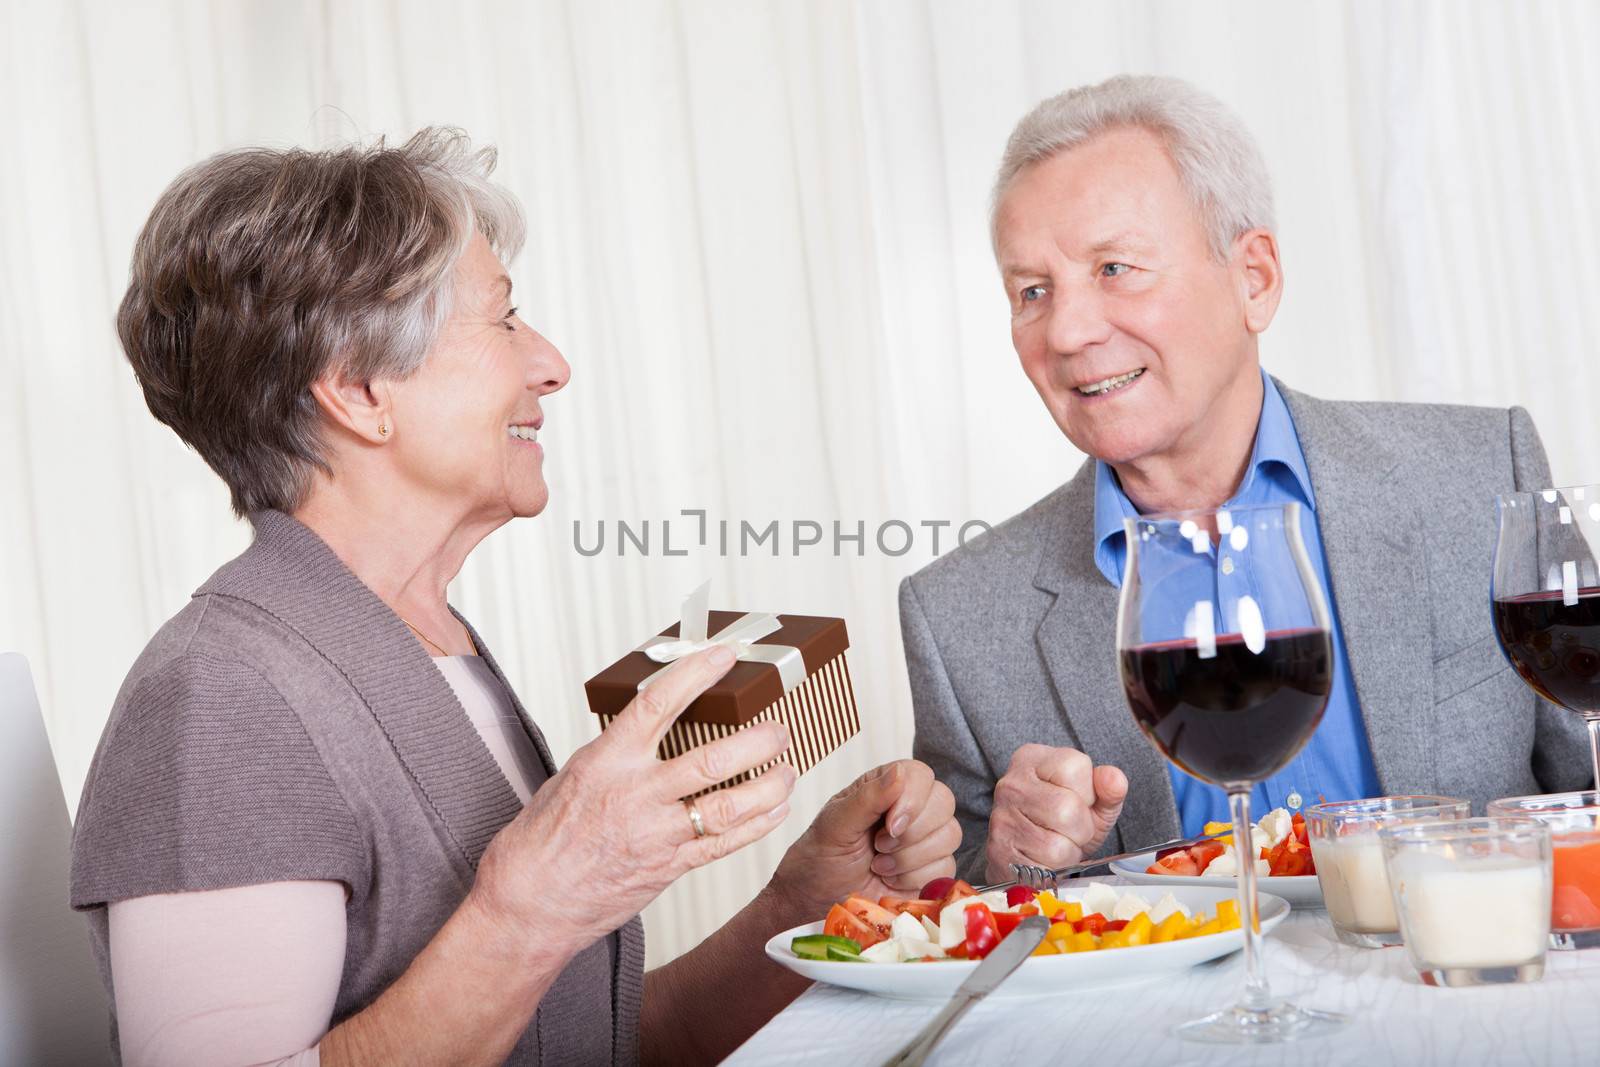 Senior Man Giving Gift To Senior Woman In Restaurant